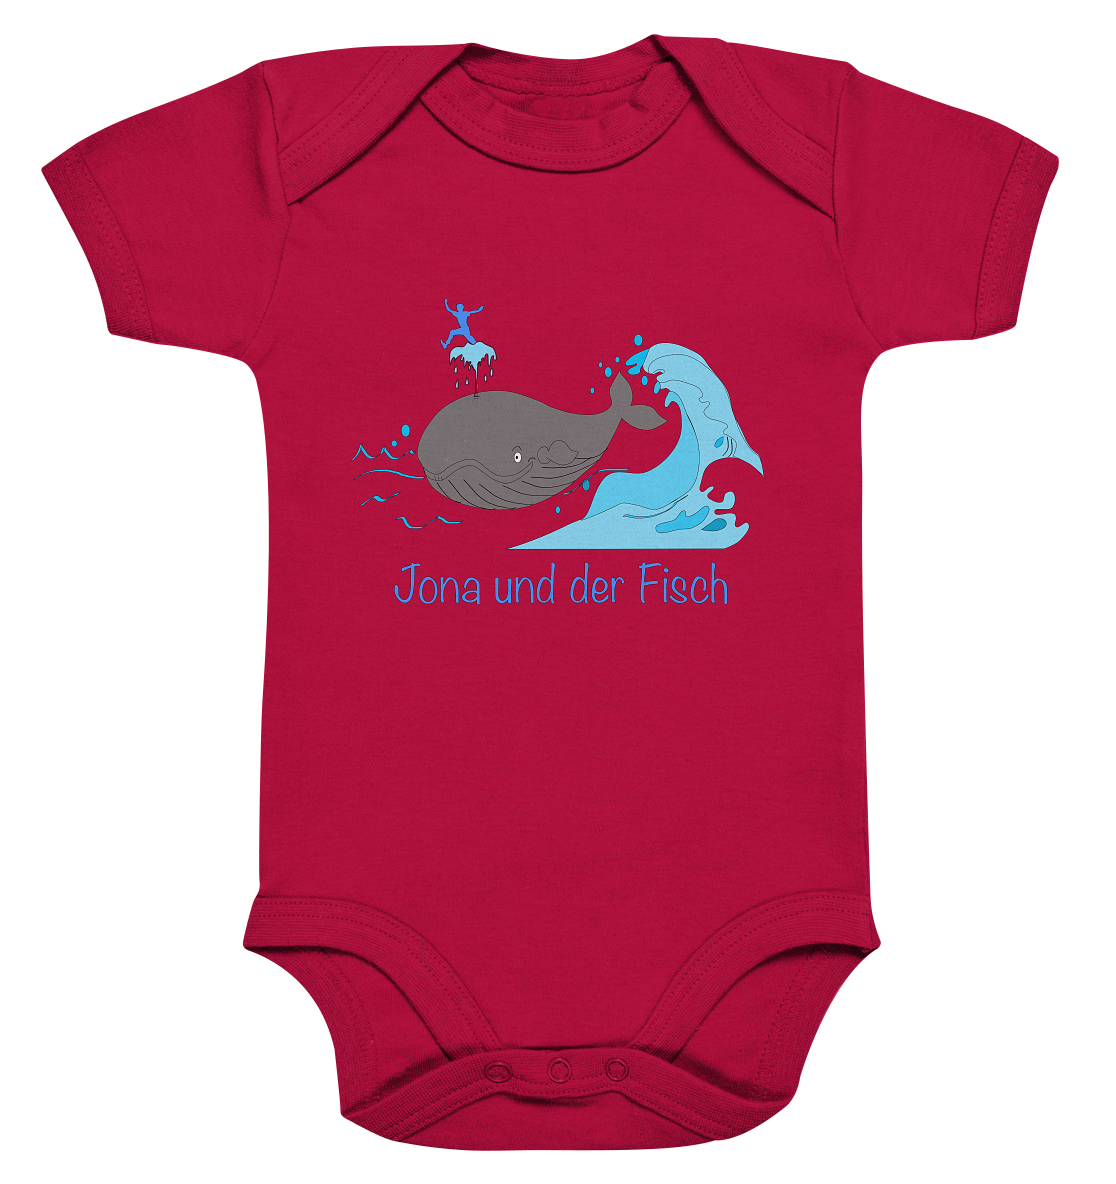 Jona und der Fisch - Organic Baby Bodysuite